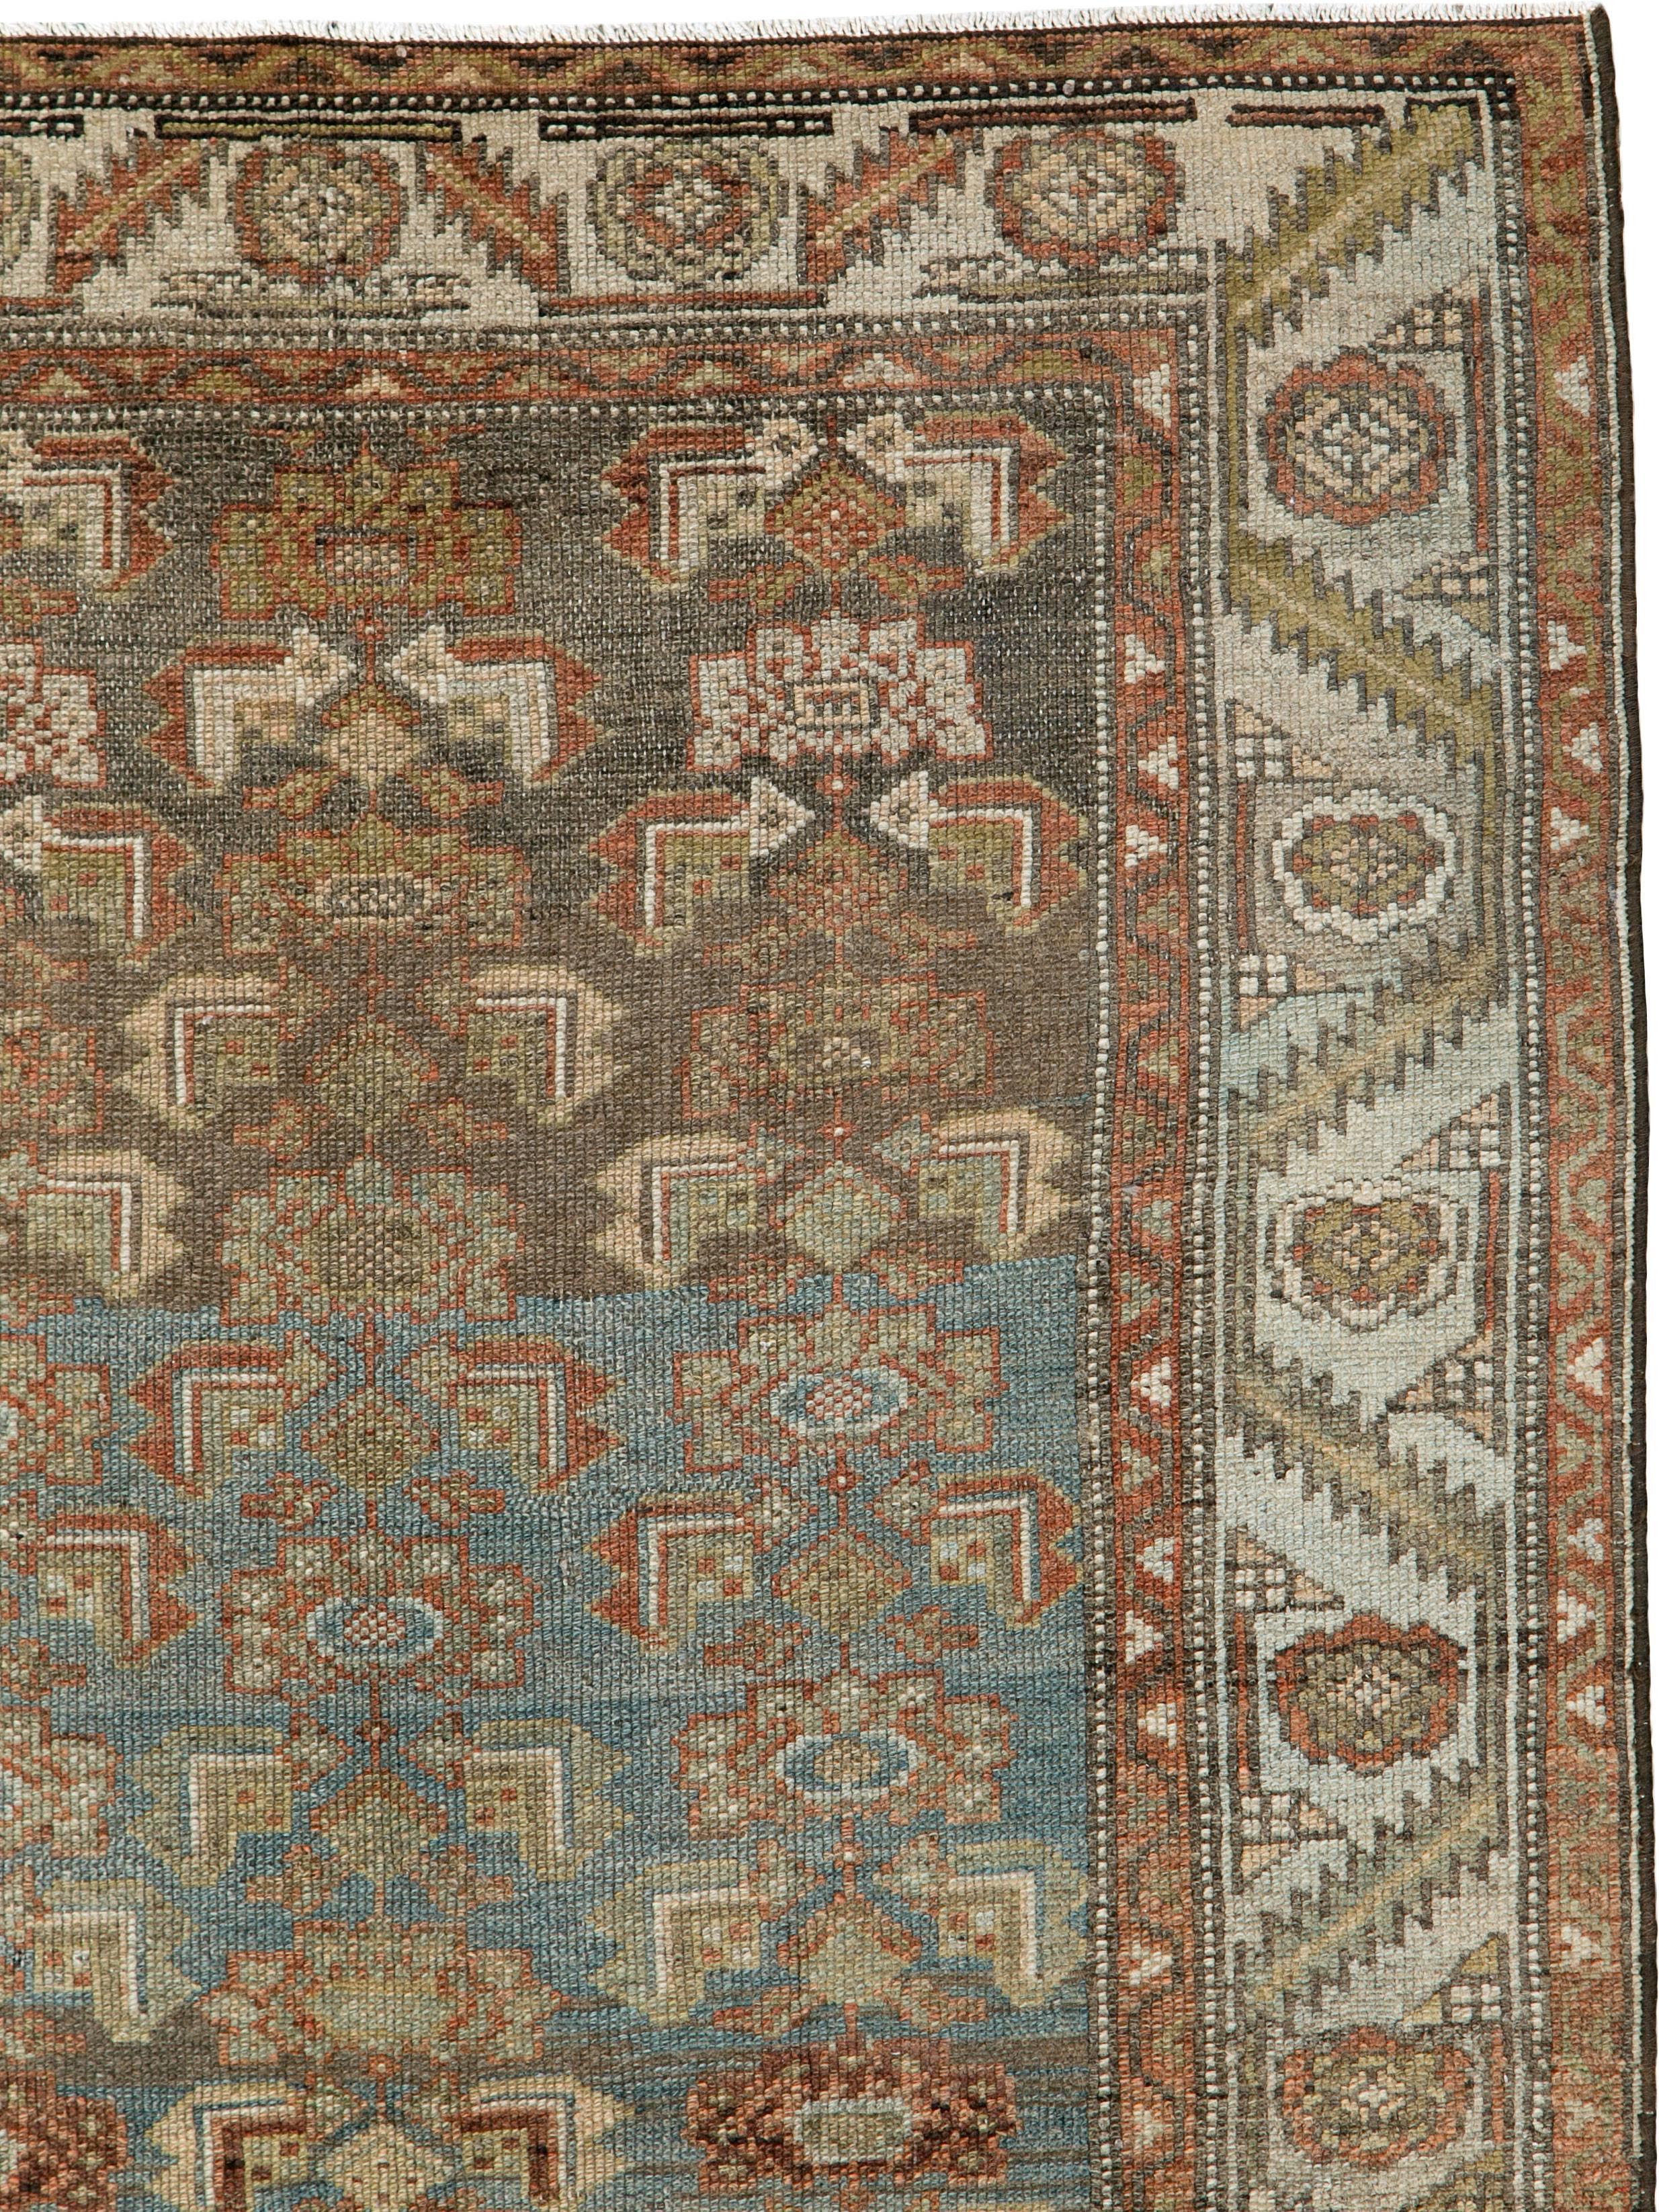 Un ancien tapis Persan Kurd du premier quart du 20ème siècle.